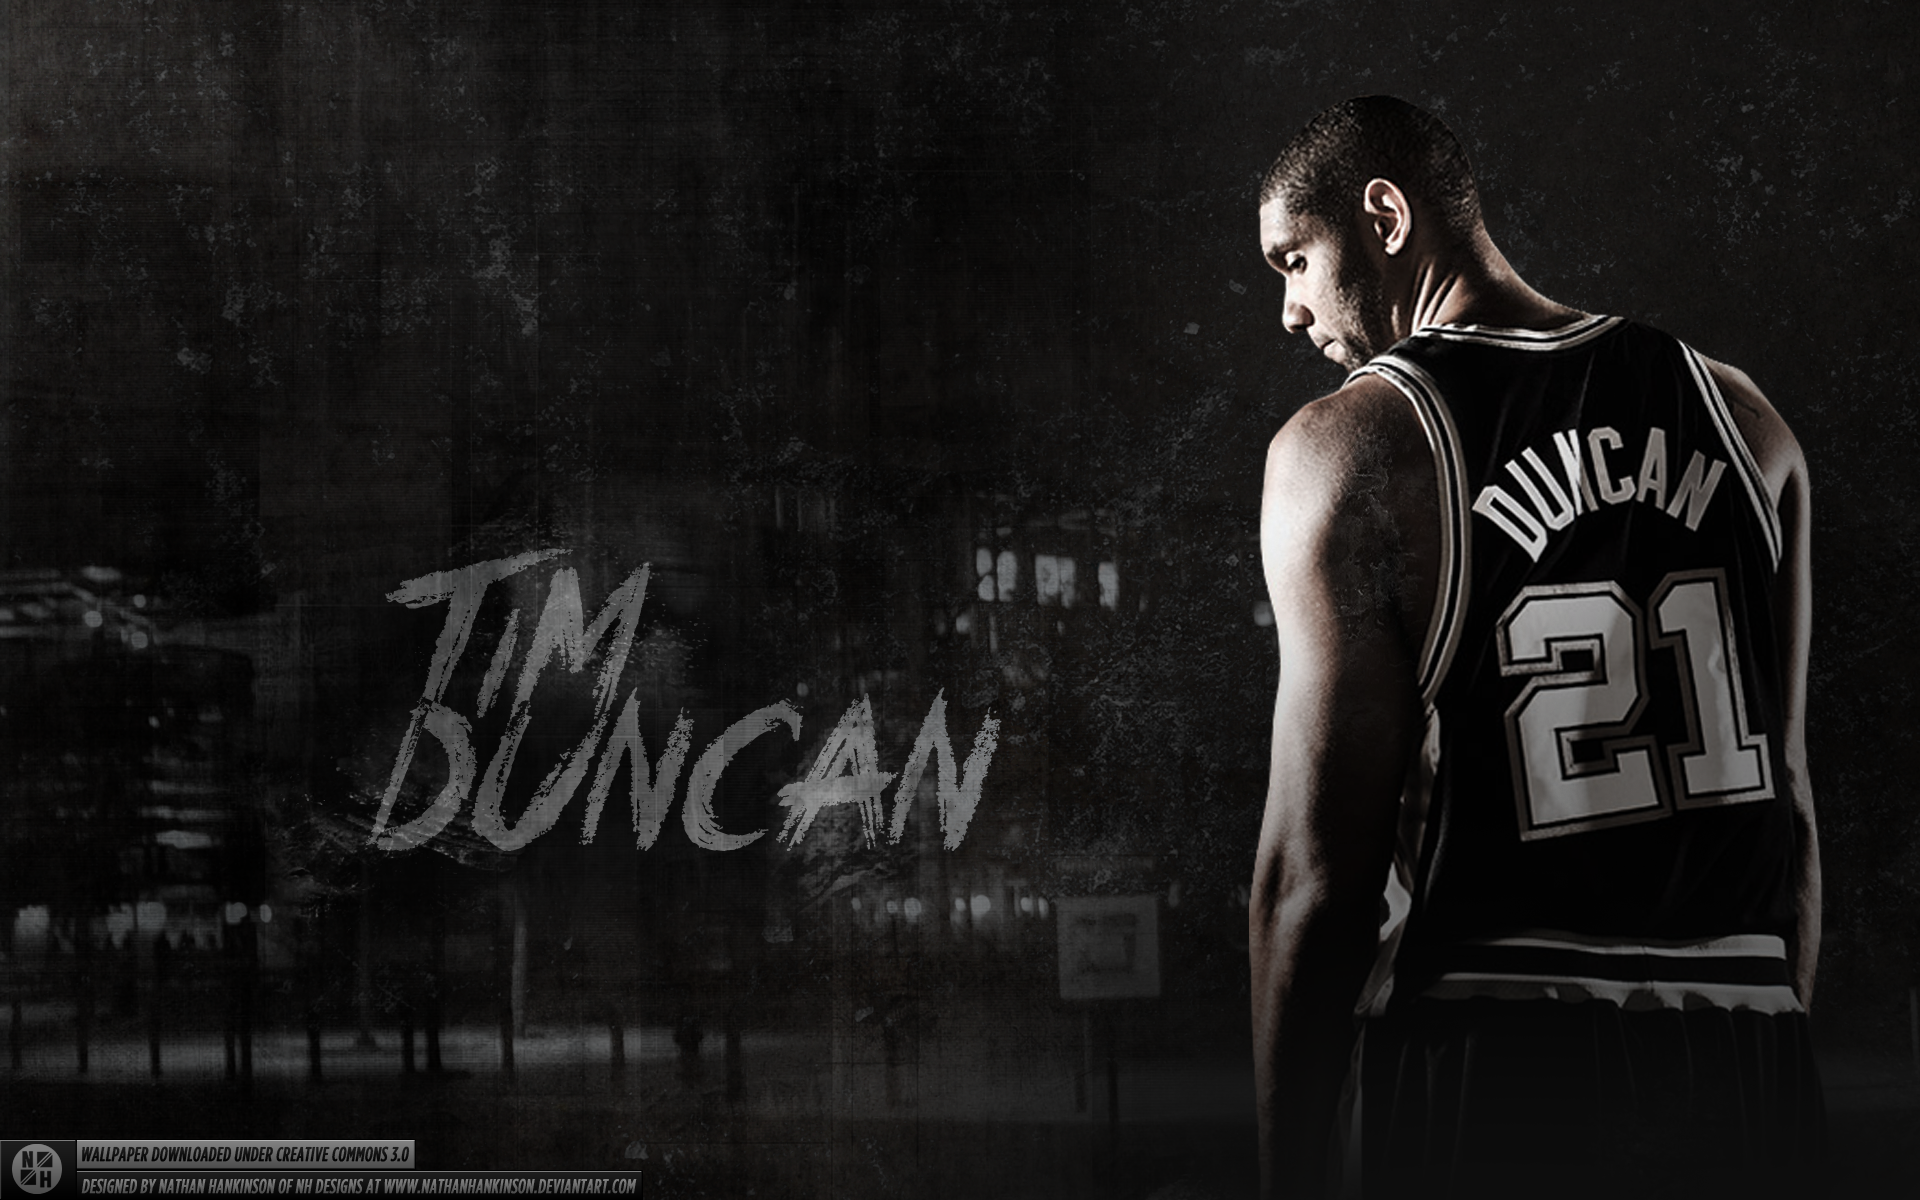 Баскетболист Тим Дункан